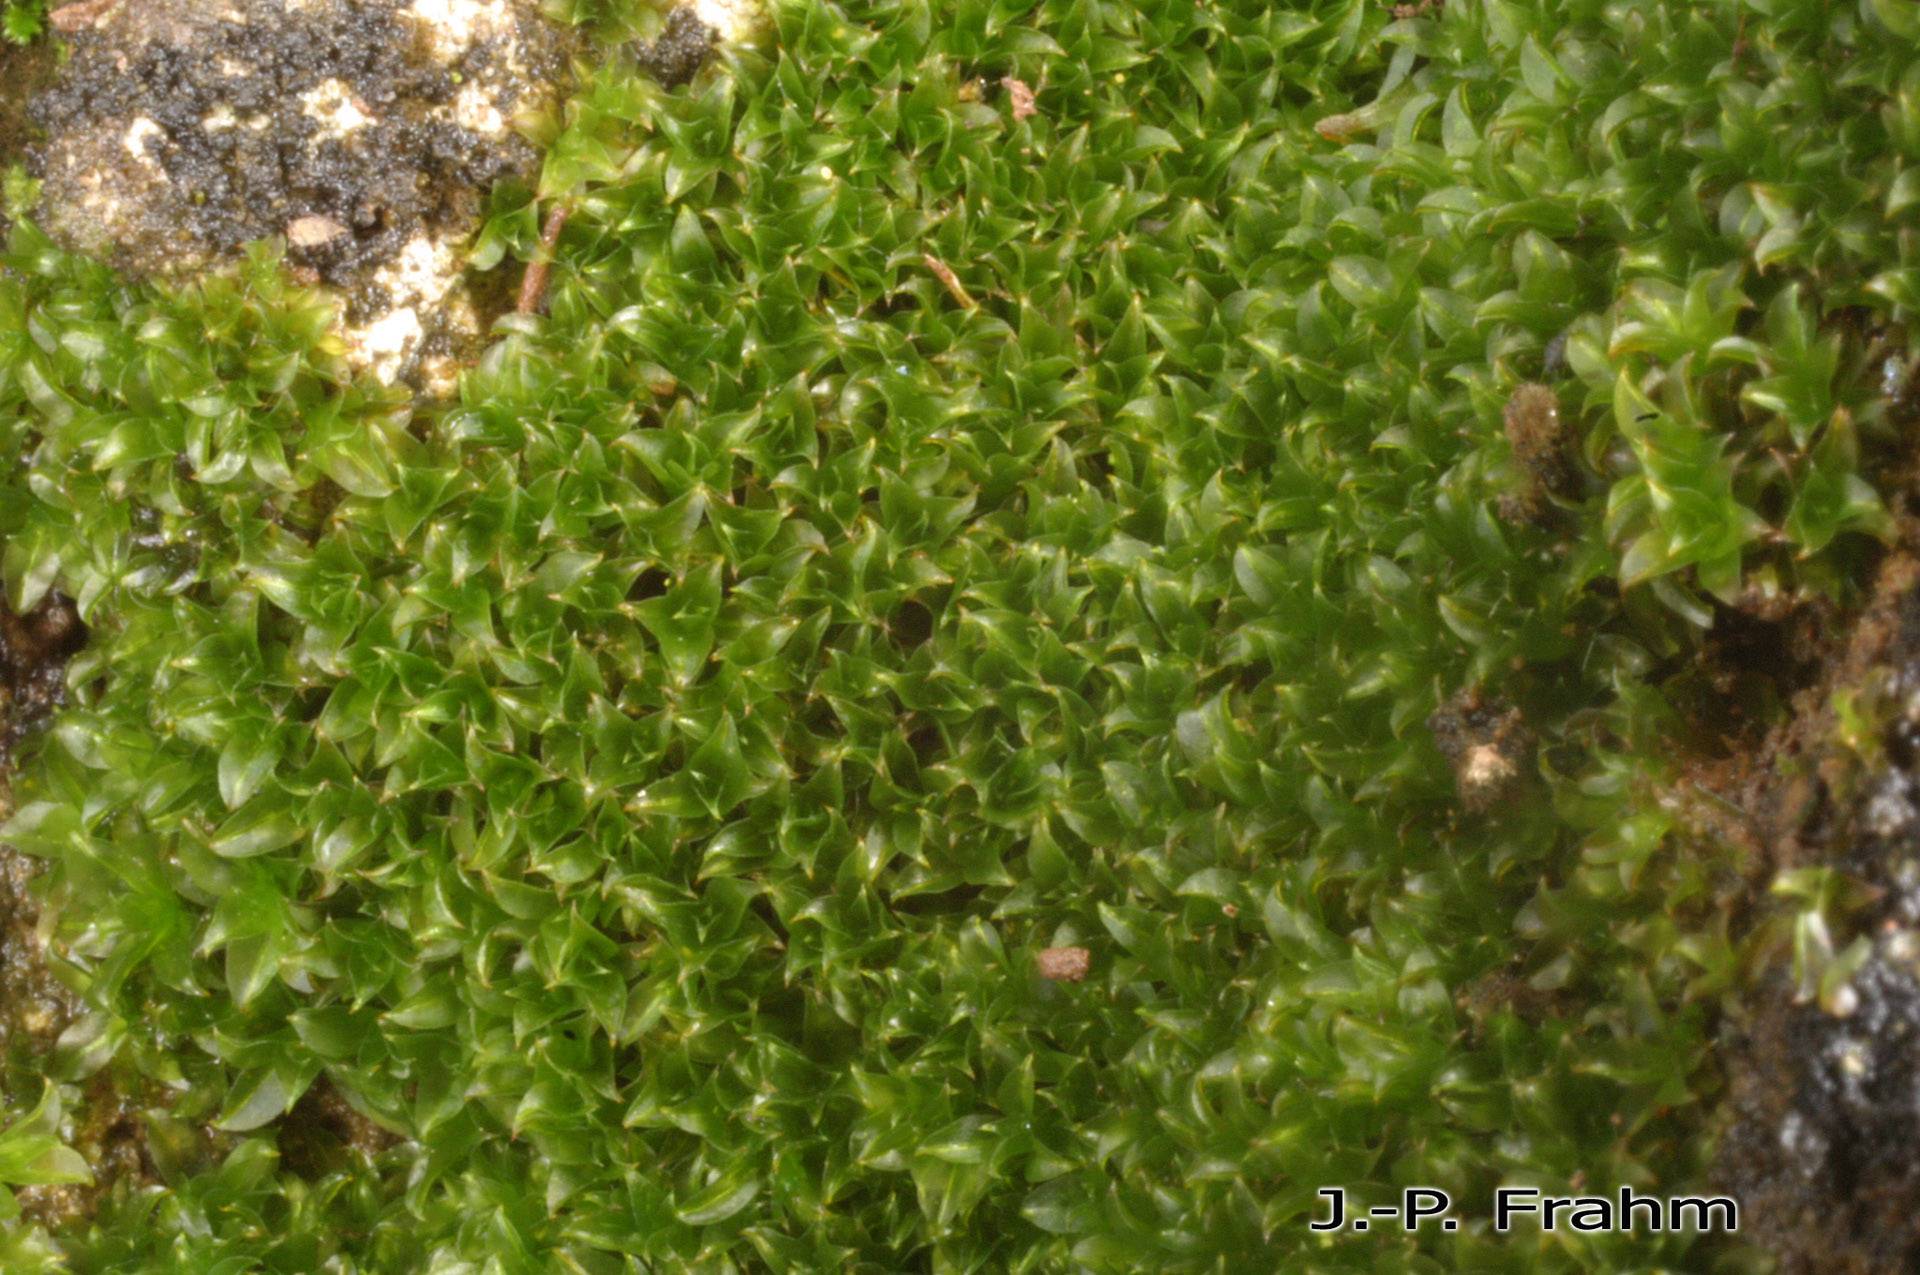 http://azoresbioportal.uac.pt/pt/especies-dos-acores/chenia-leptophylla-11918/